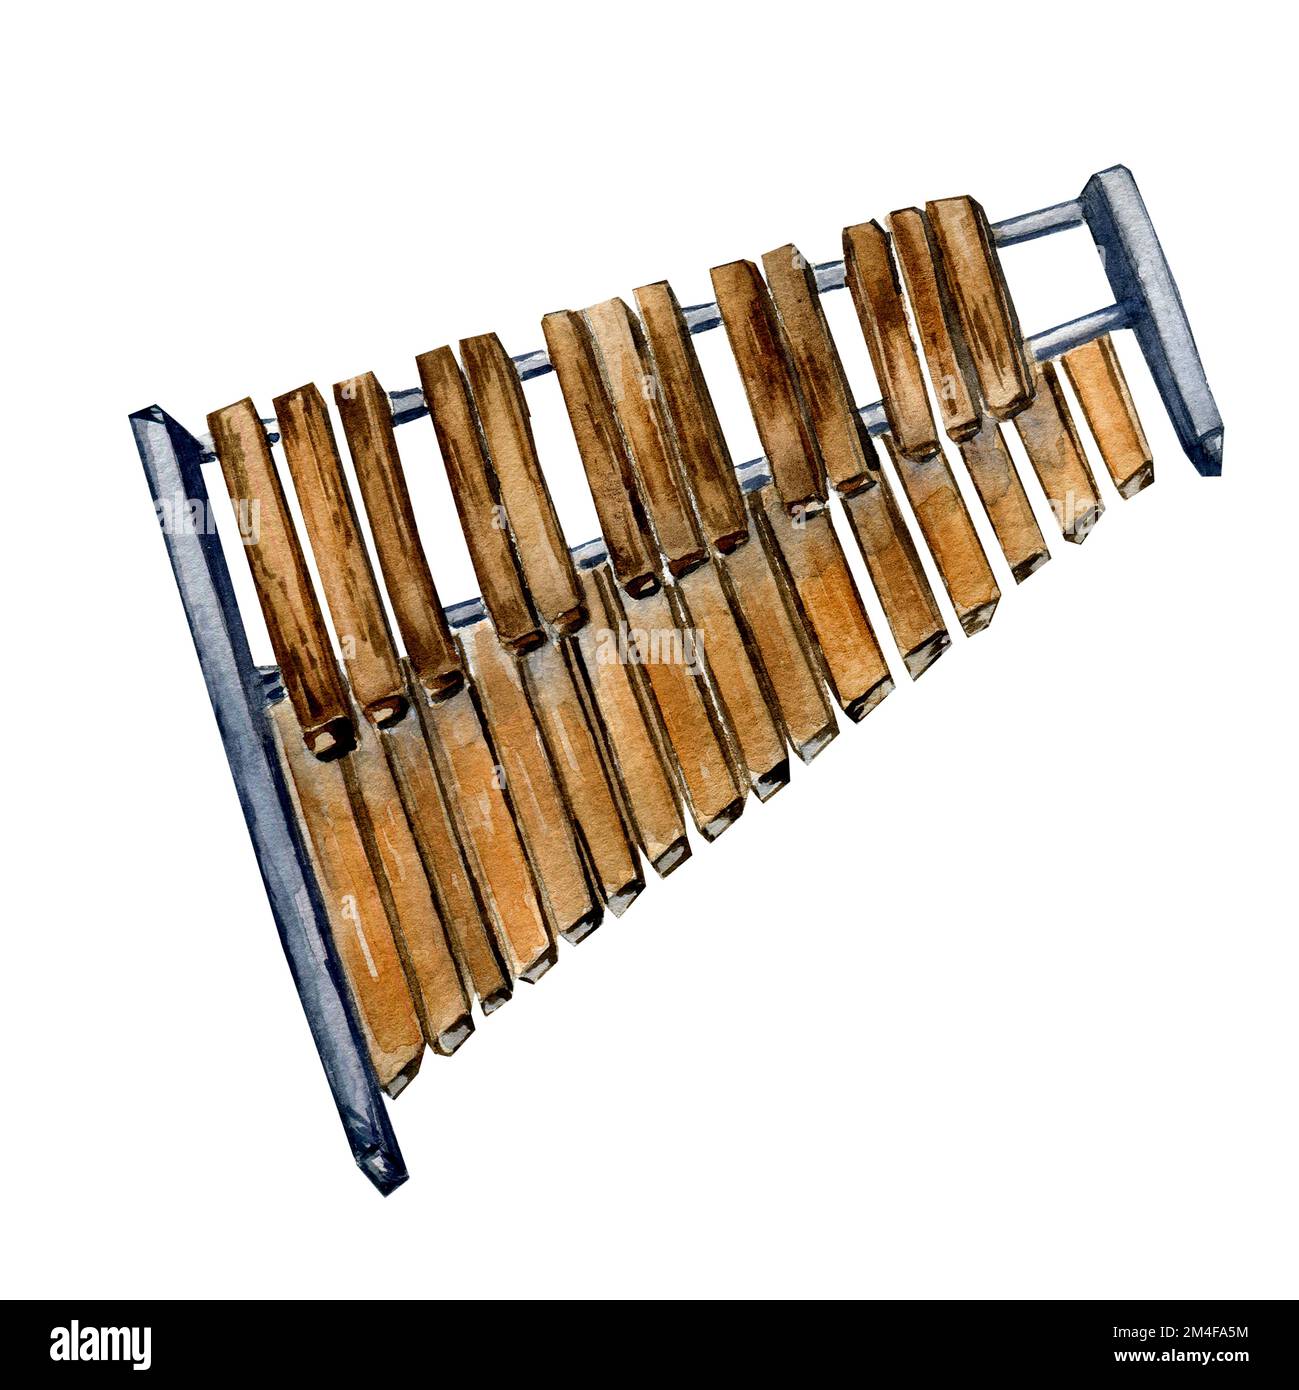 Instrument de musique à percussion xylophone aquarelle illustration isolée. Son d'instrument en bois peint à la main. Élément de design pour l'emballage, carte postale Banque D'Images